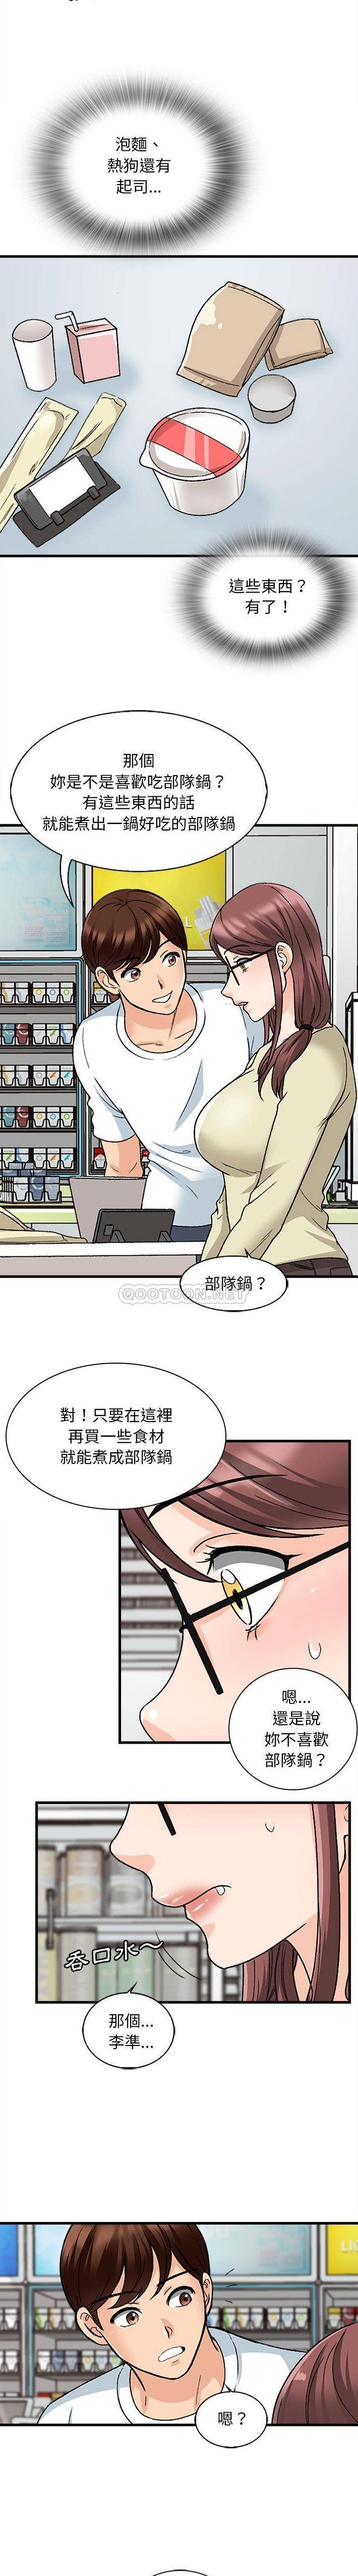 韩国污漫画 幸福公寓 第9话 13